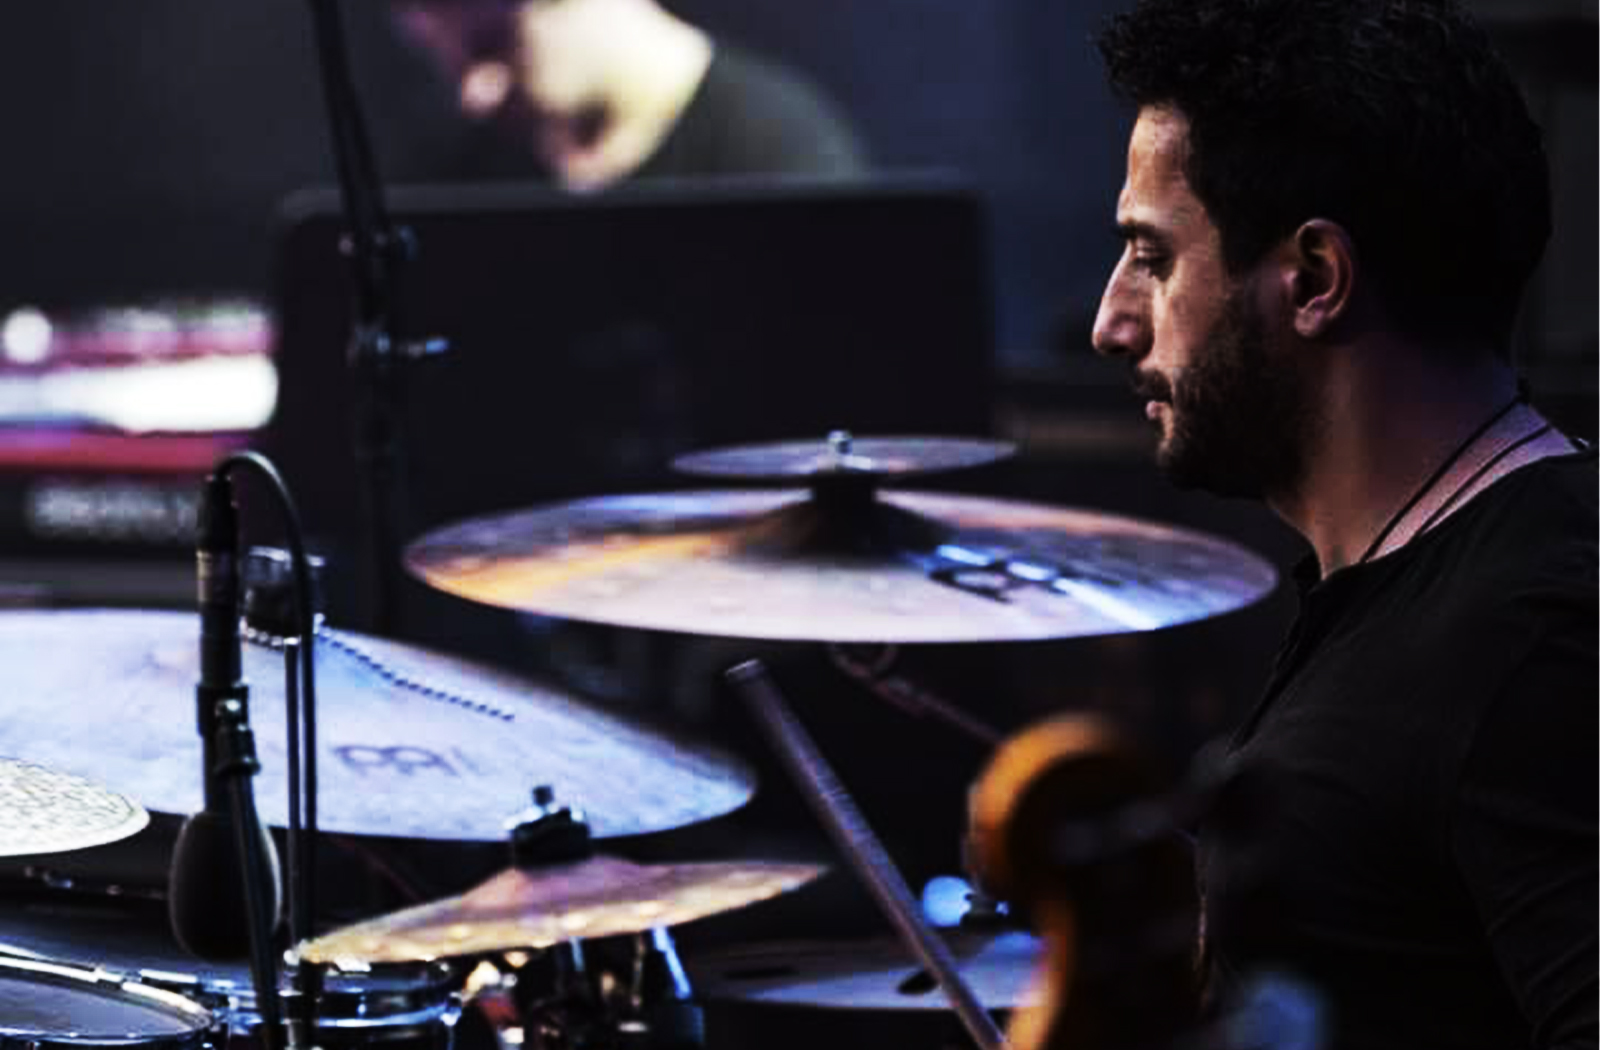 Santino Scavelli spielt Schlagzeug, Drum, Becken, Meinlycymbals, Splash, Crash, Ride 